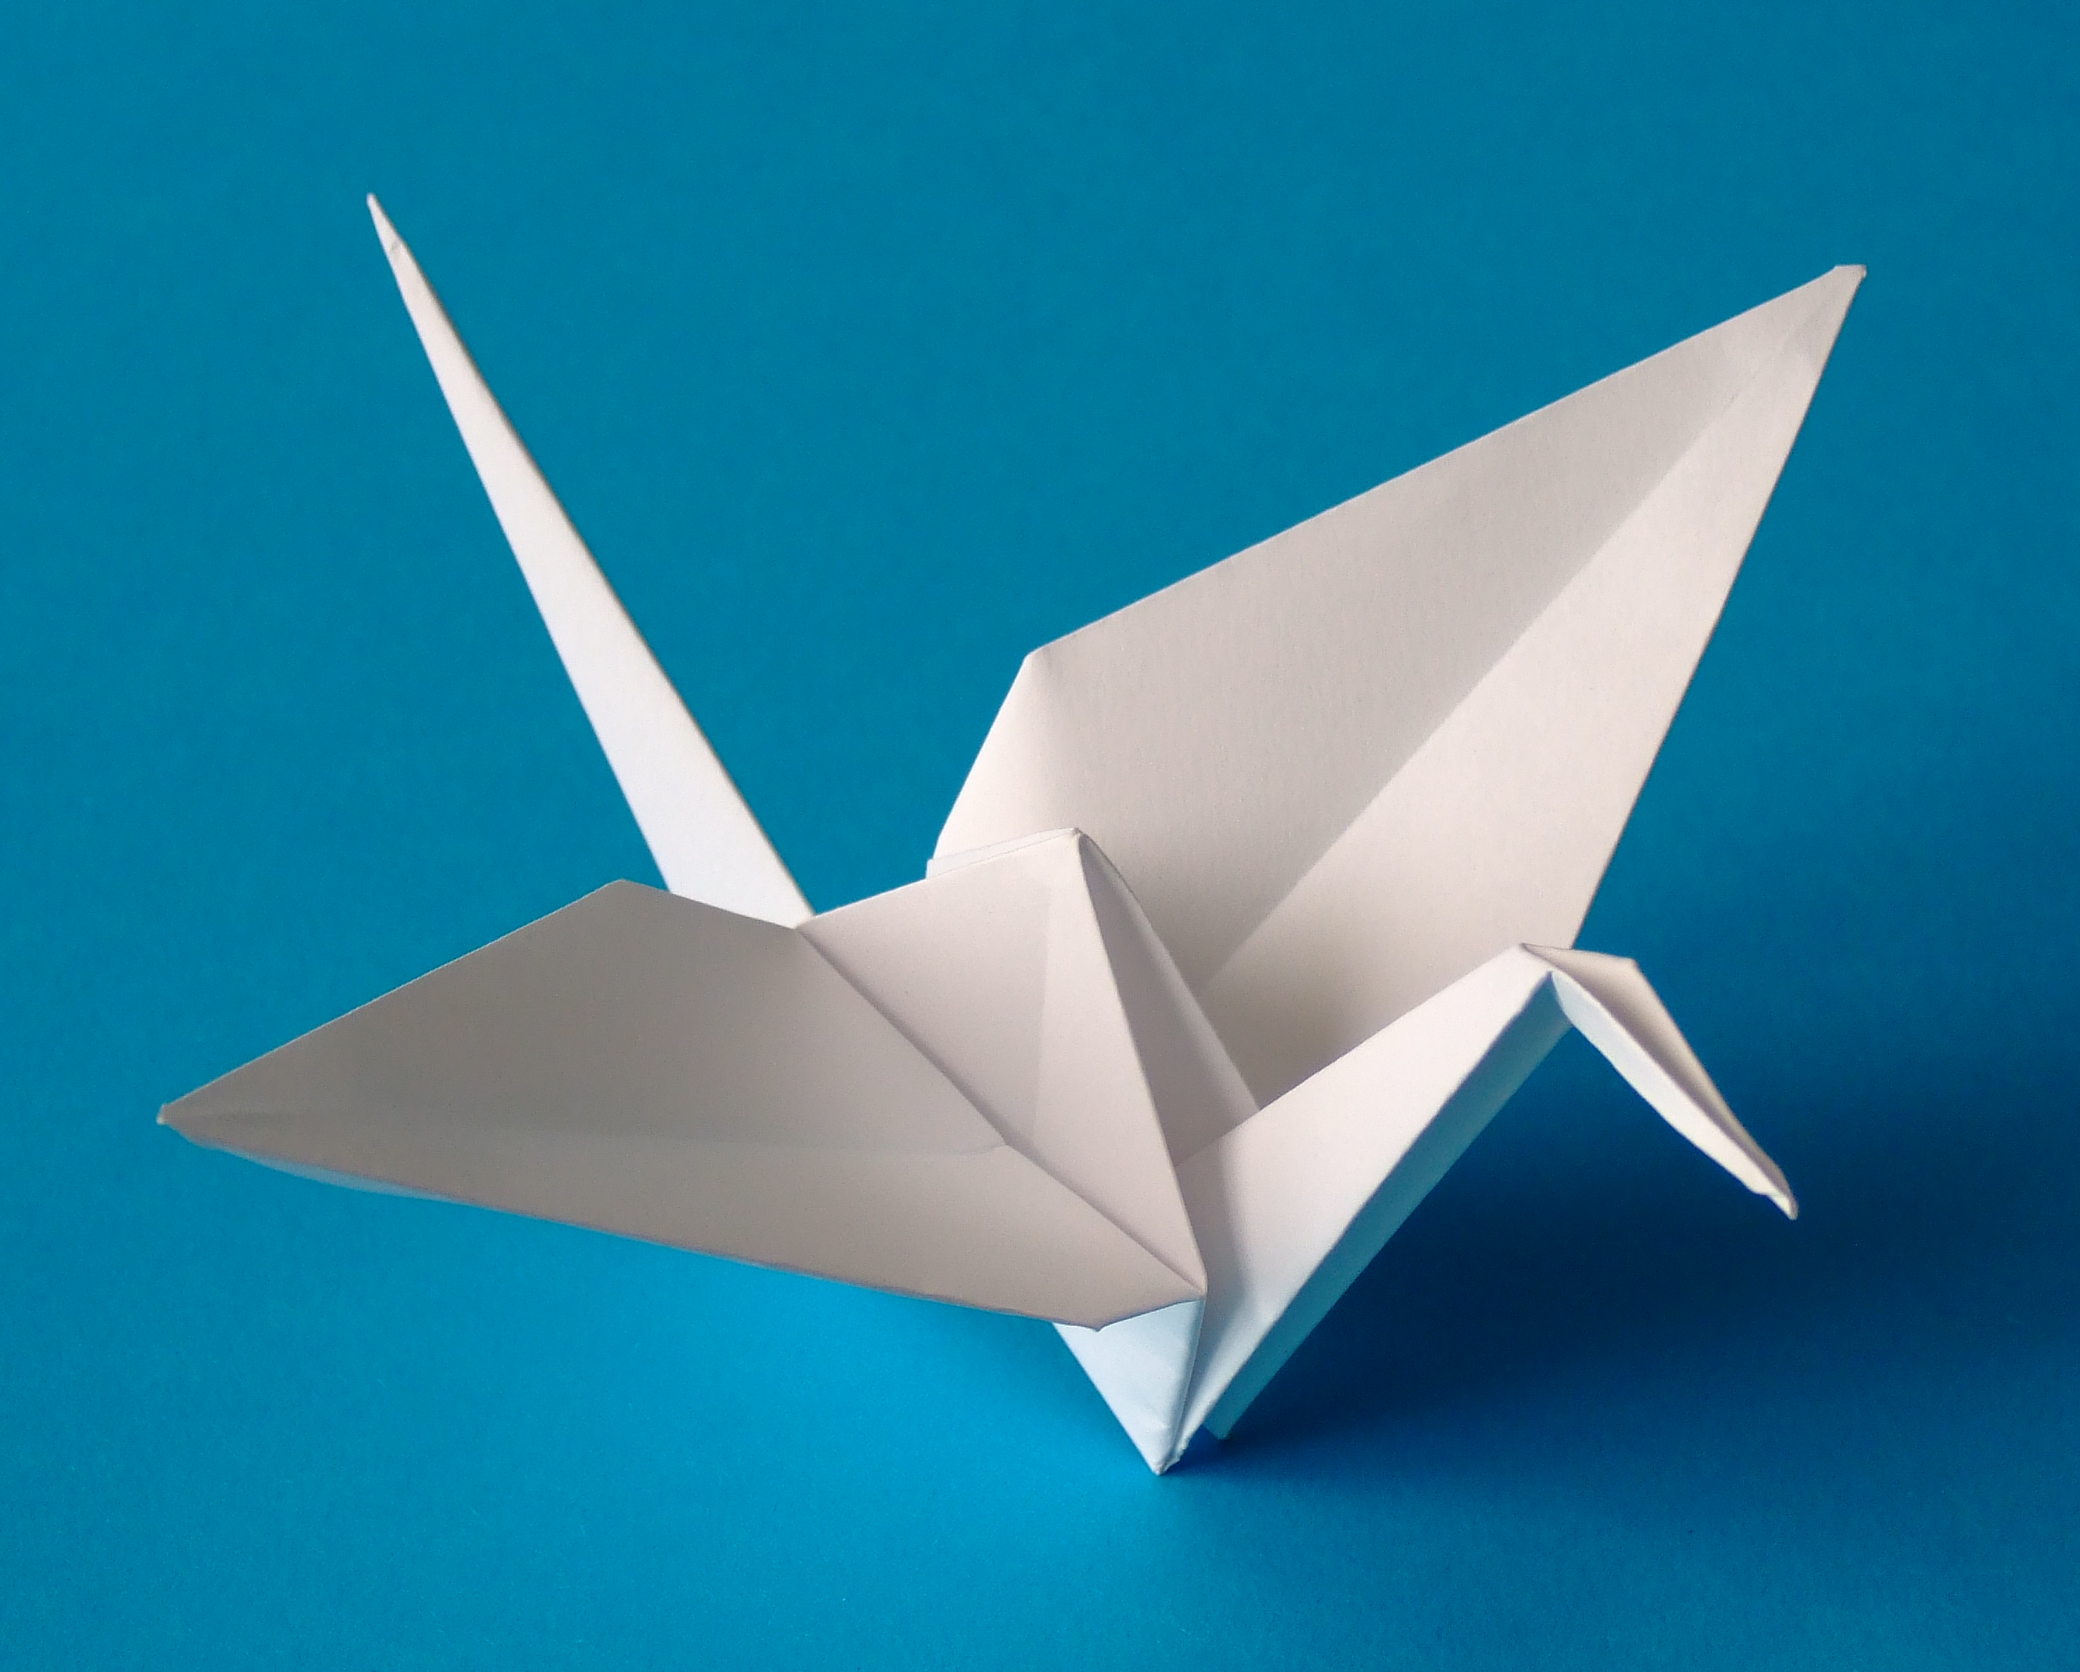 paper origami bird